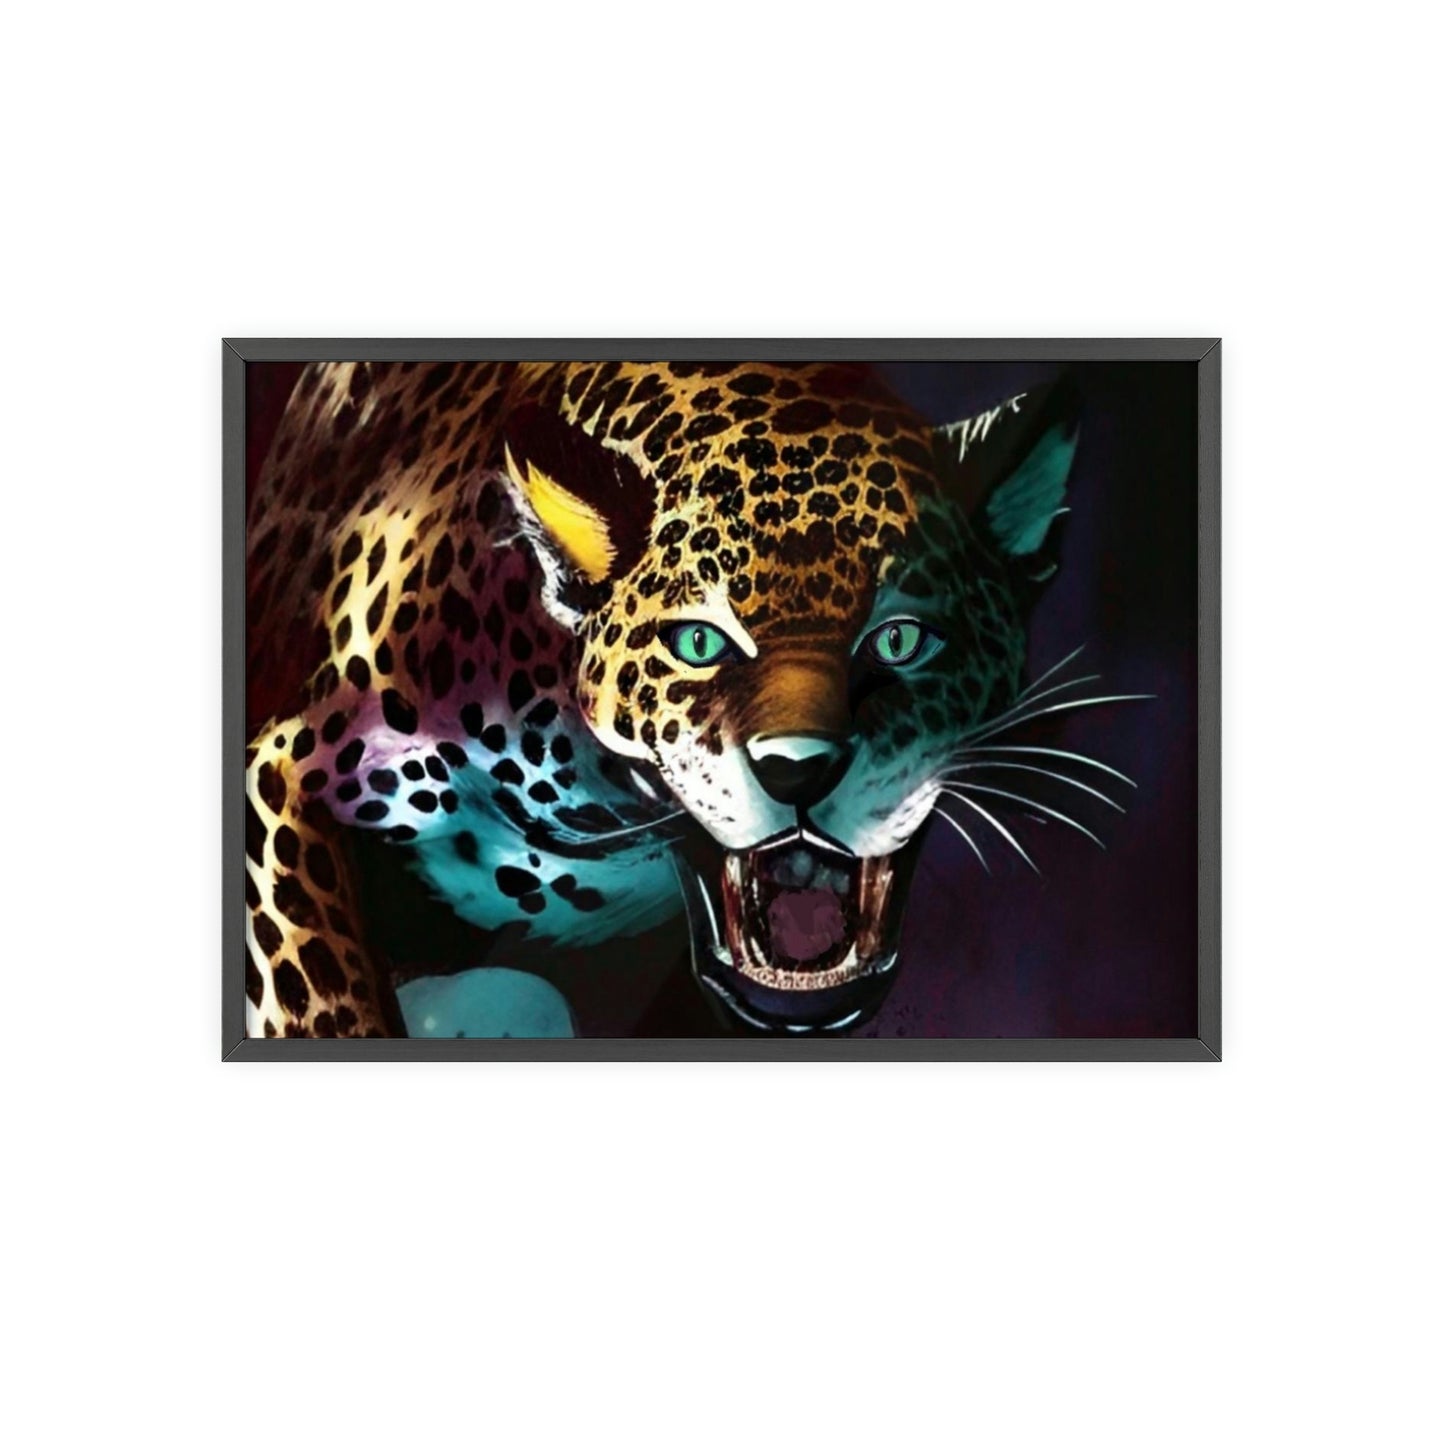 Jaguar Poster with Wooden Frame